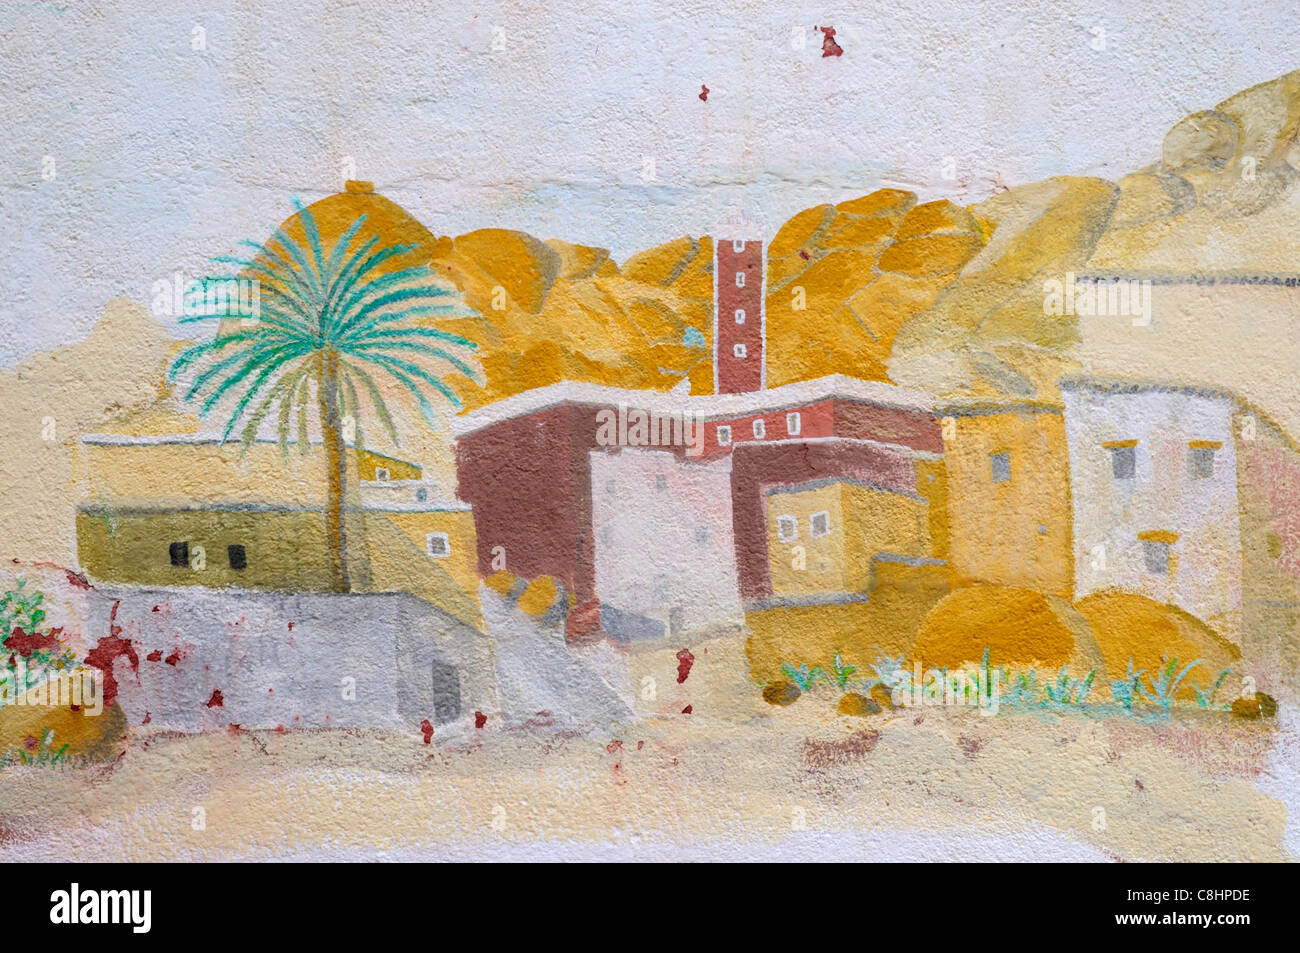 Peinture murale représentant l'IDRN, l'IDRN, village près de Tafraoute, Région de Souss-Massa-Draa, Maroc Banque D'Images